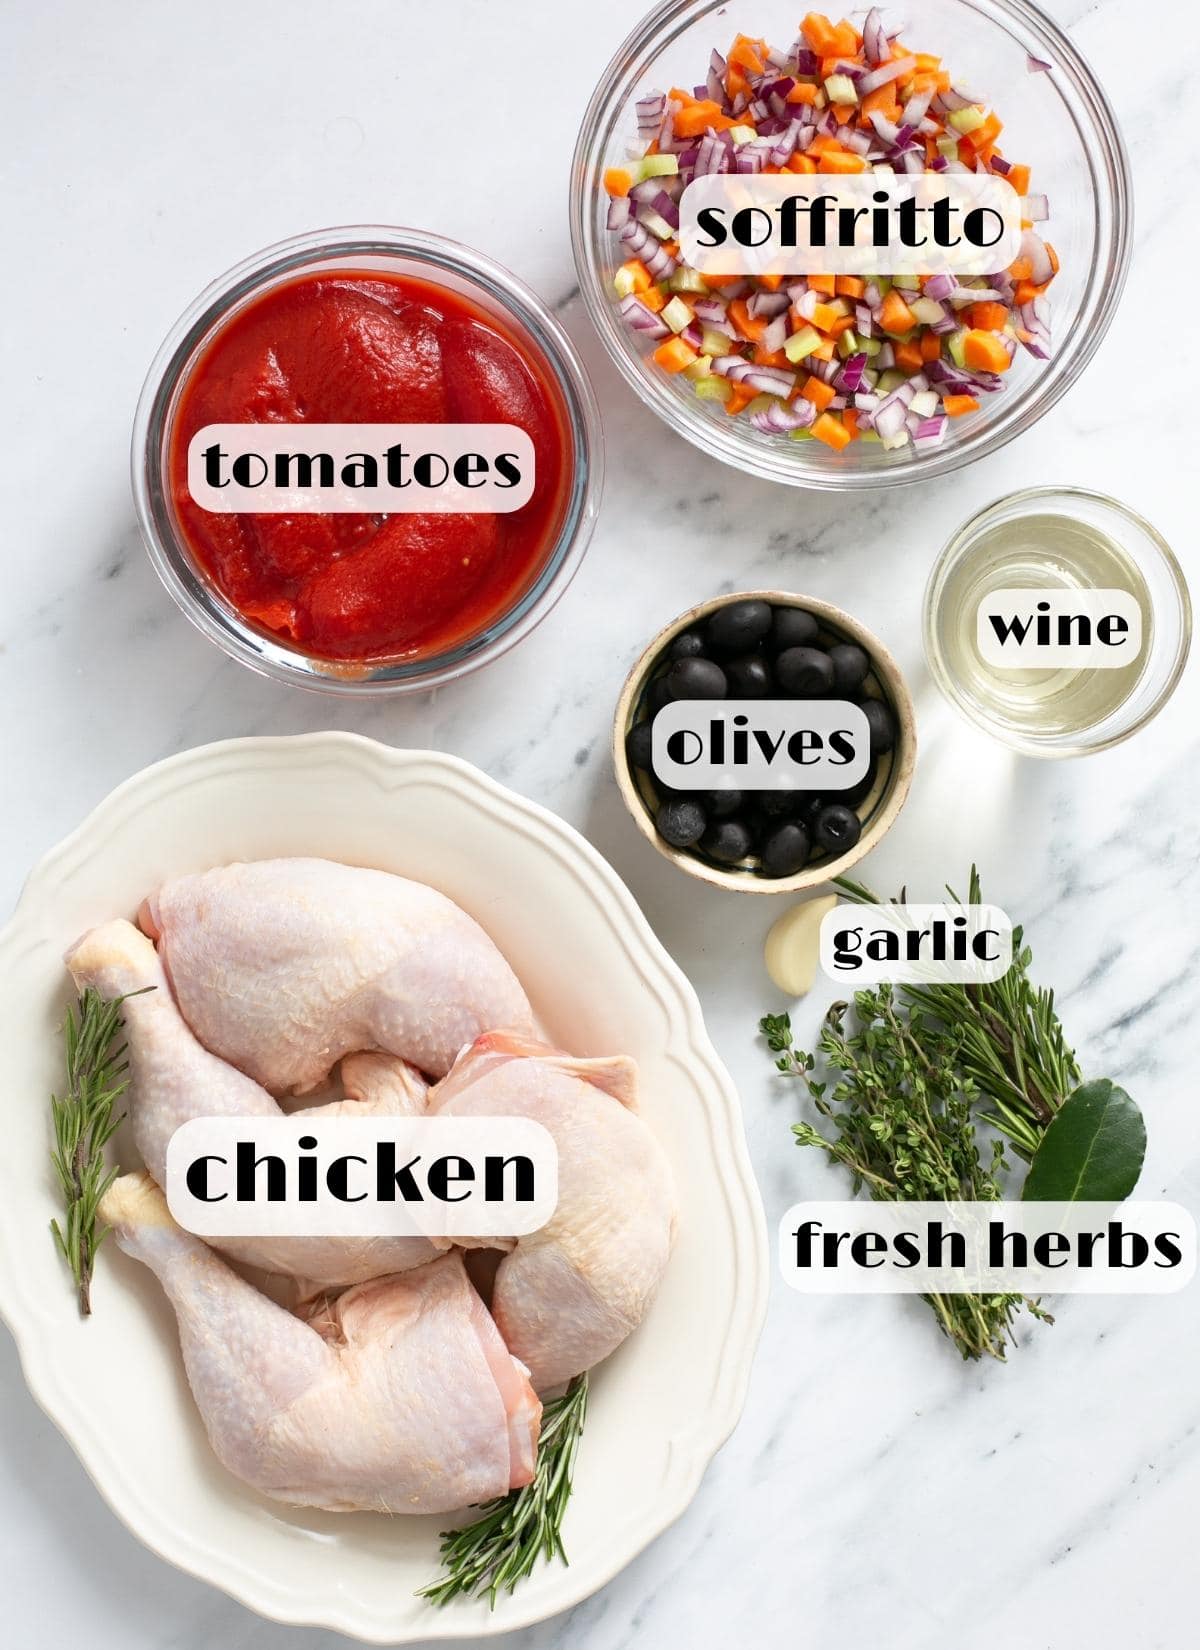 pollo alla cacciatora ingrediënten: kippenpoten en -dijen, soffritto, verse kruiden, zwarte olijven, witte wijn, knoflook, tomaten uit blik.